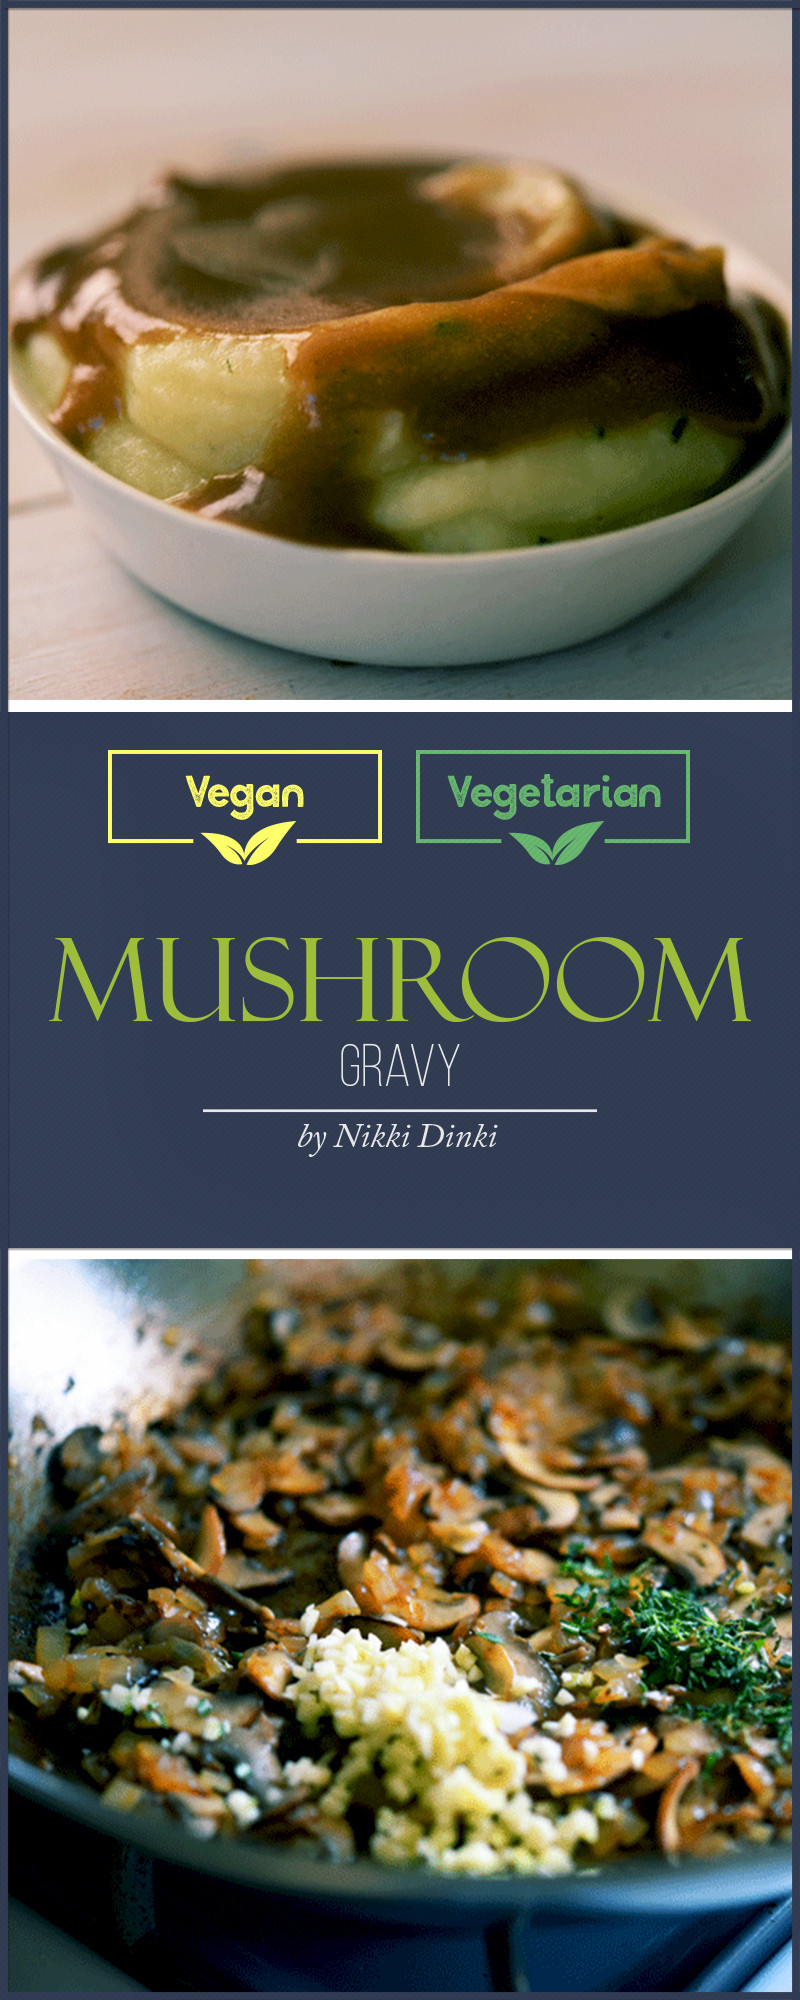 Mushroom Gravy Vegetarian
 Mushroom Gravy Recipe